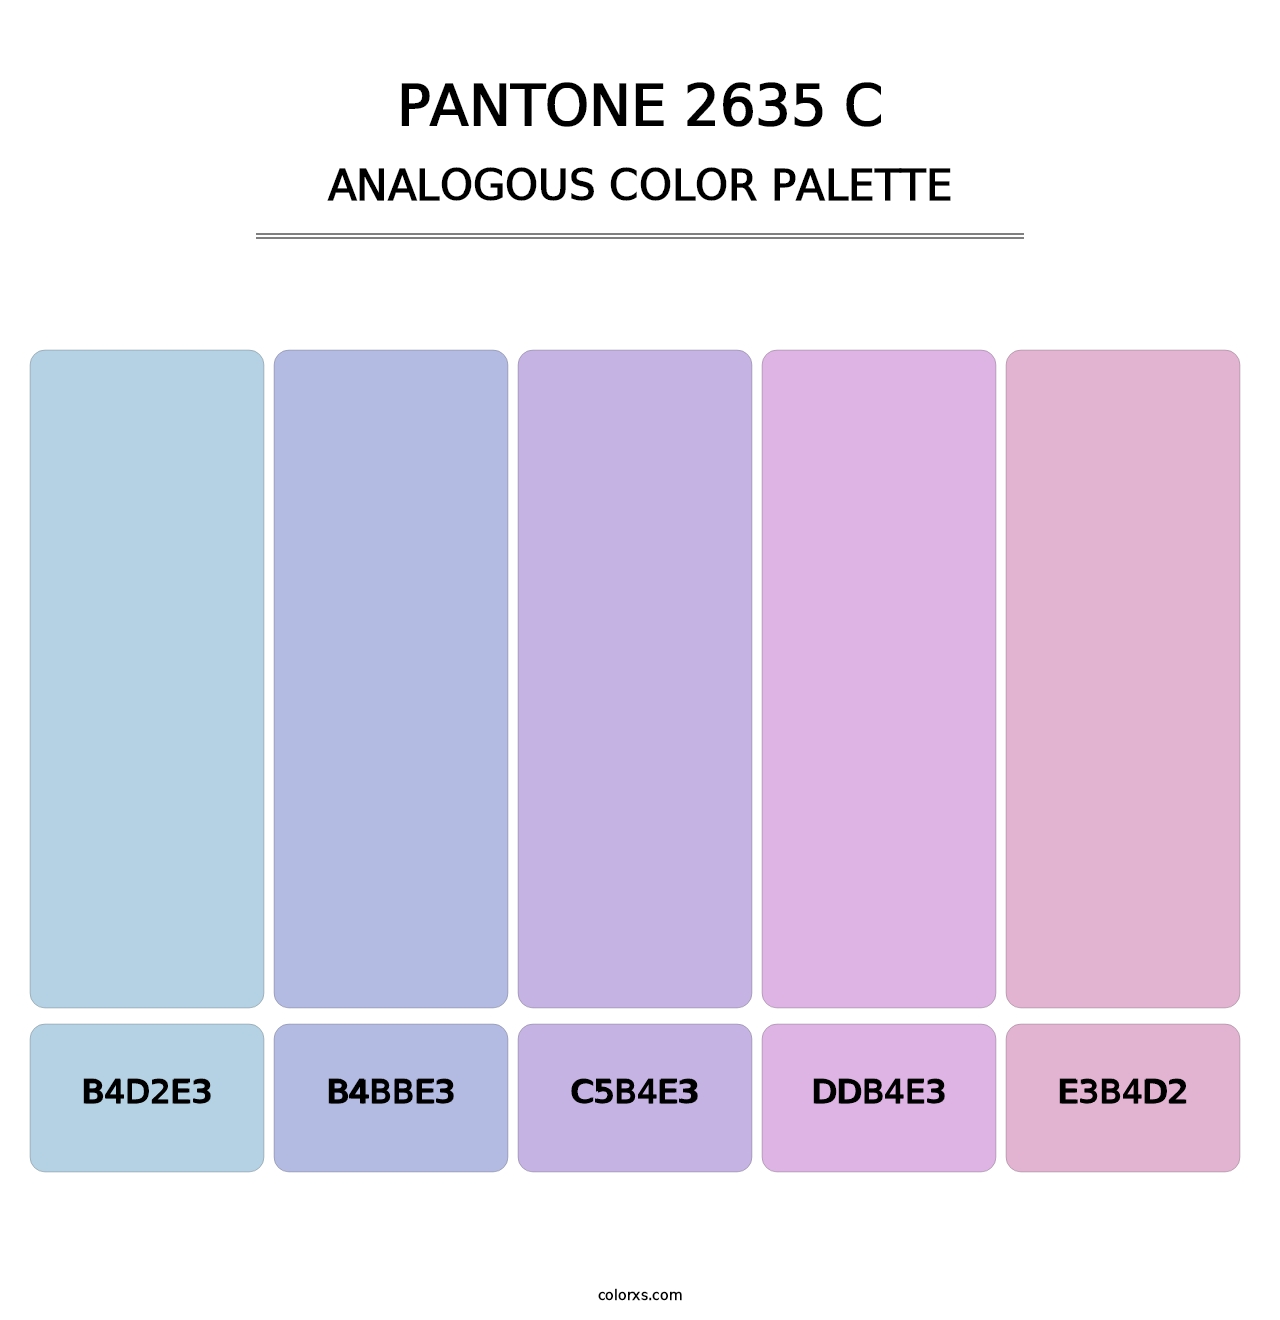 PANTONE 2635 C - Analogous Color Palette